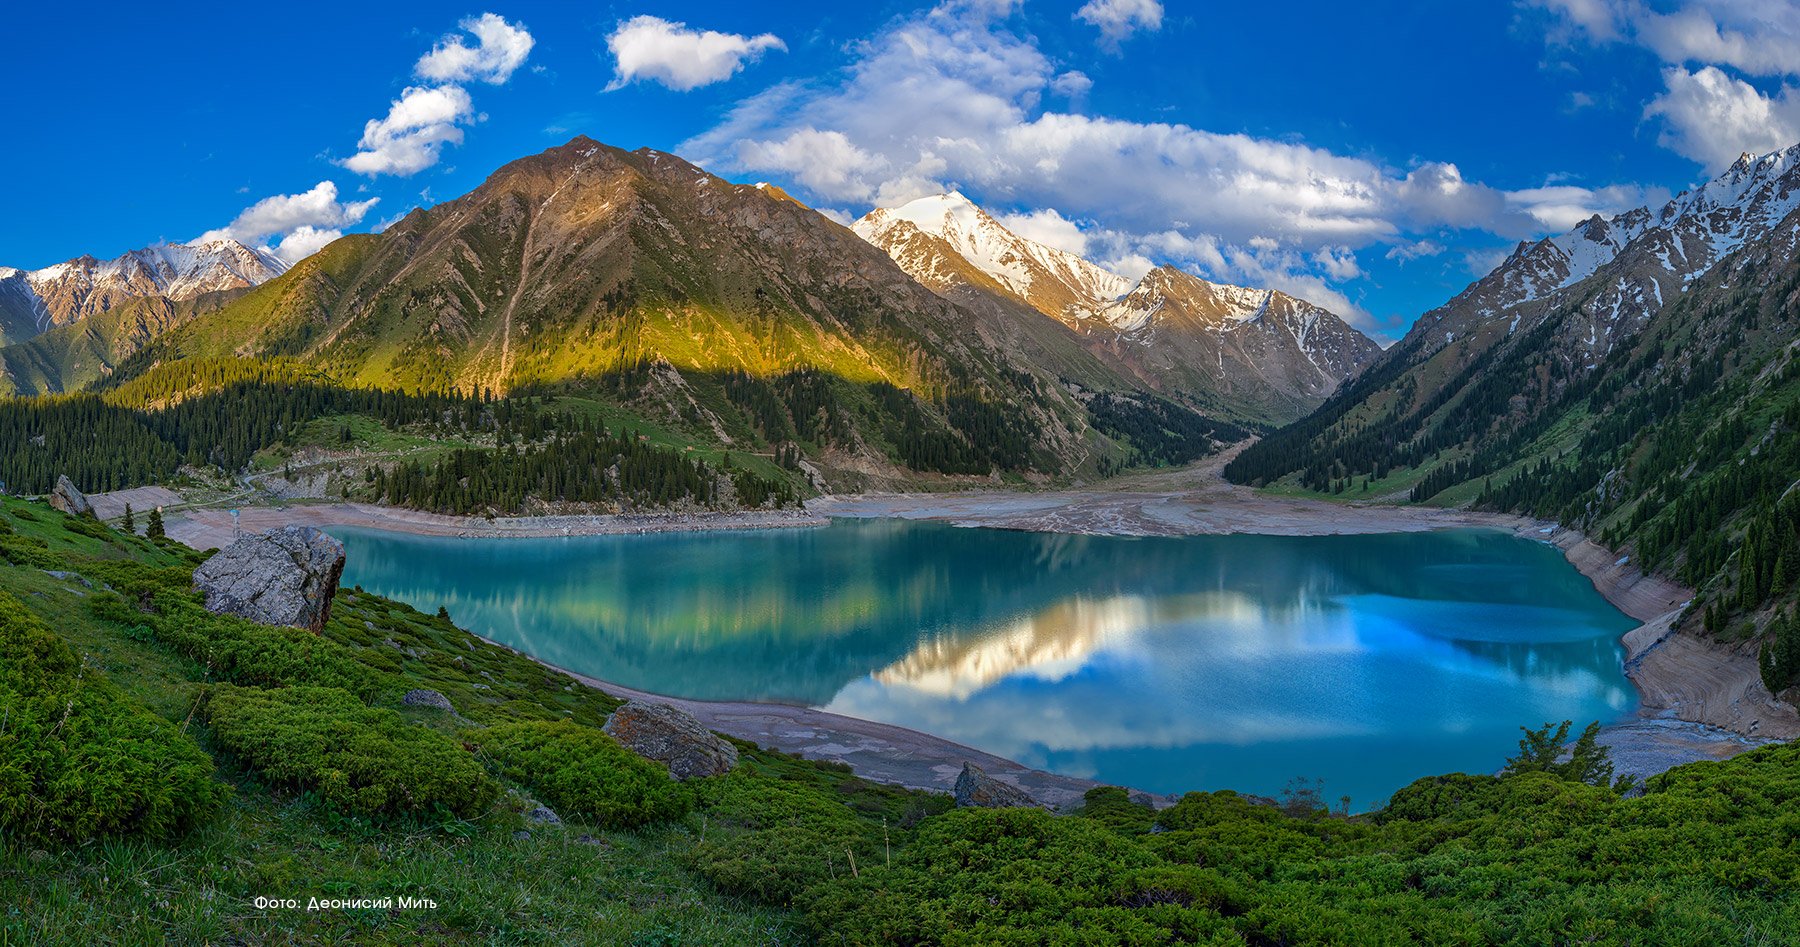 Казахстан вошёл в список привлекательных для туристов стран